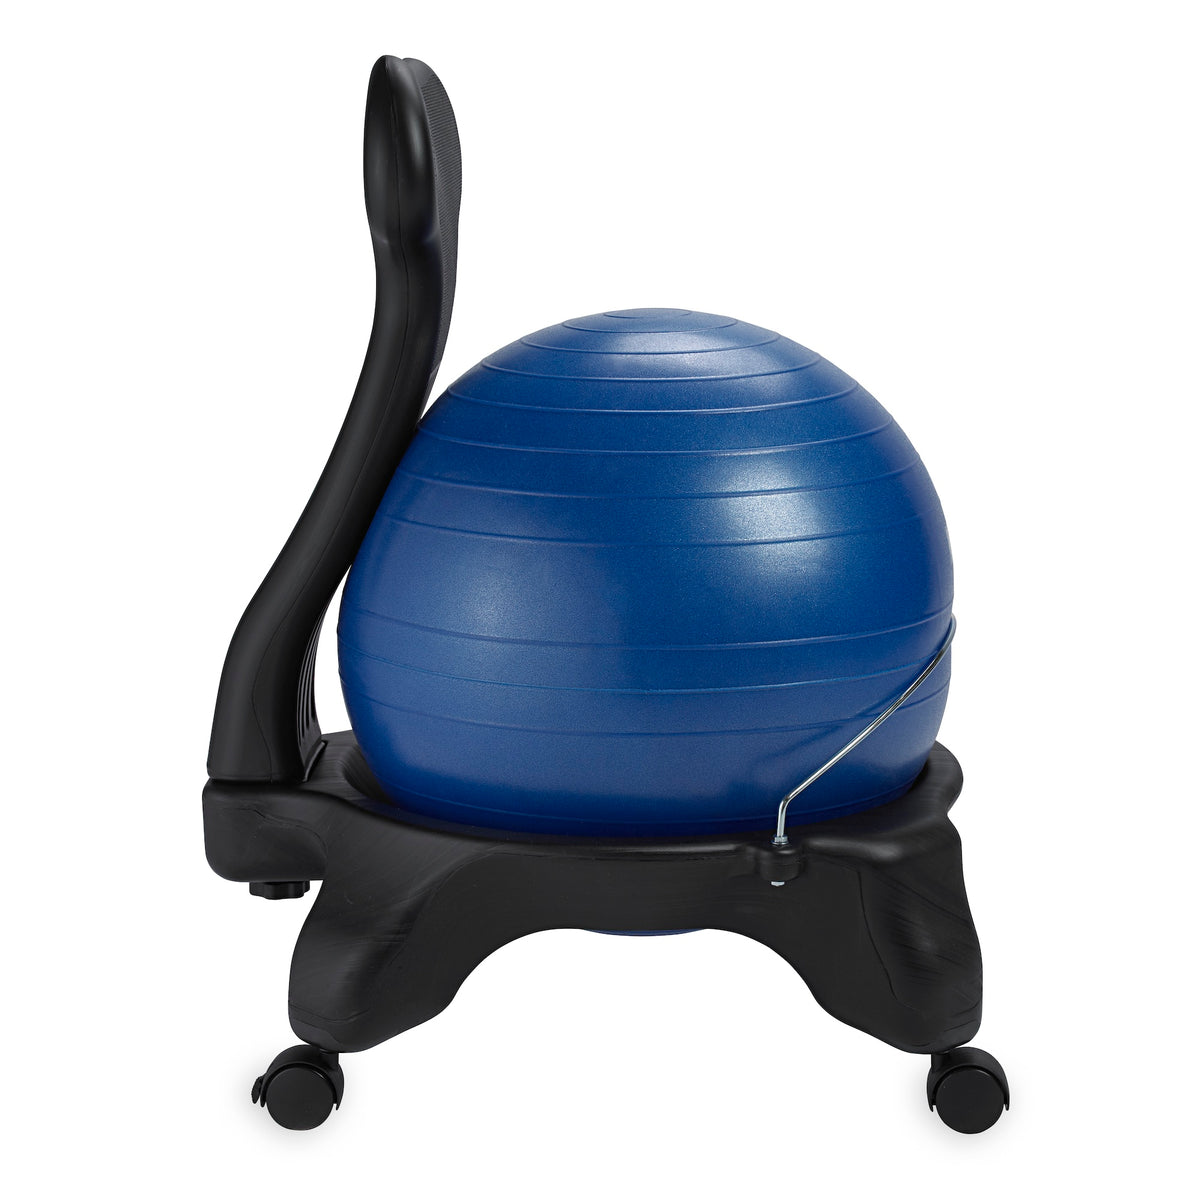 Gaiam Classic Balance Ball® Chair blue side